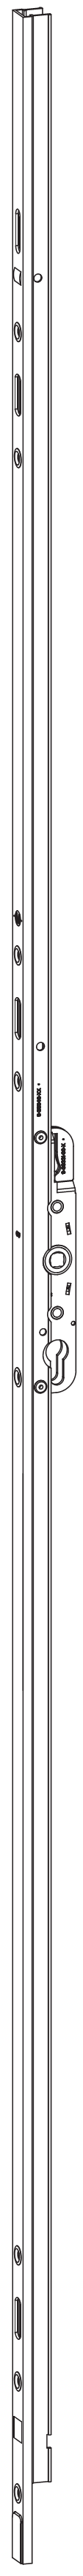 GU-ITALIA -  Cremonese HS 934 - 937 per alzante scorrevole altezza maniglia fissa con chiusura a perni - gr / dim. A PERNI DI CHIUSURA - entrata 27,5 - lbb/hbb 850-1270